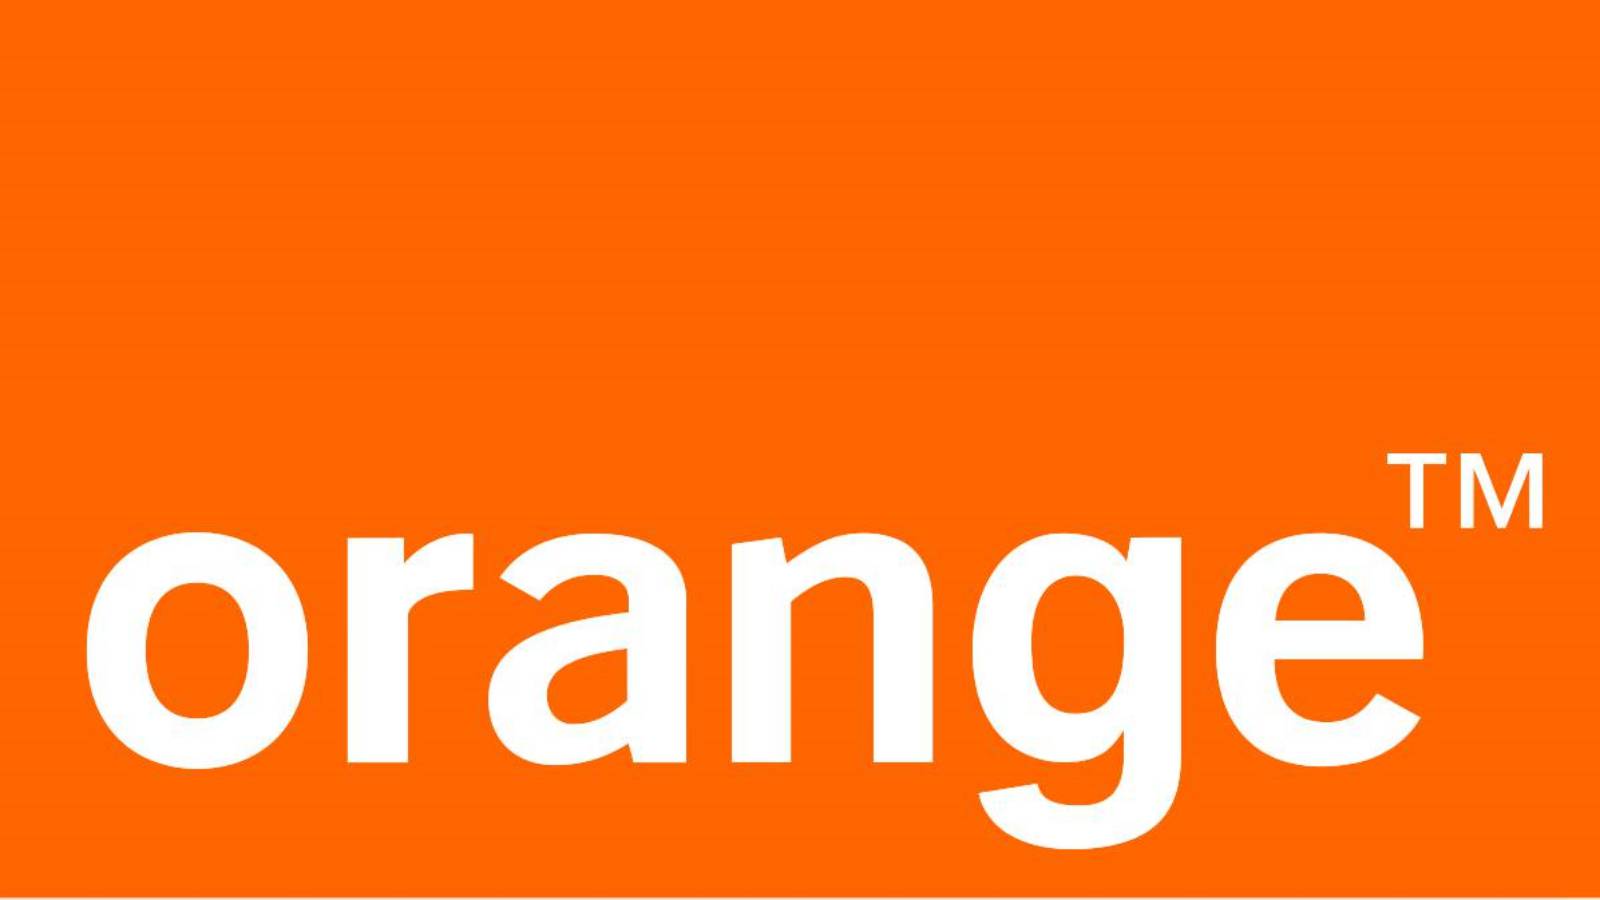 Atlas orange